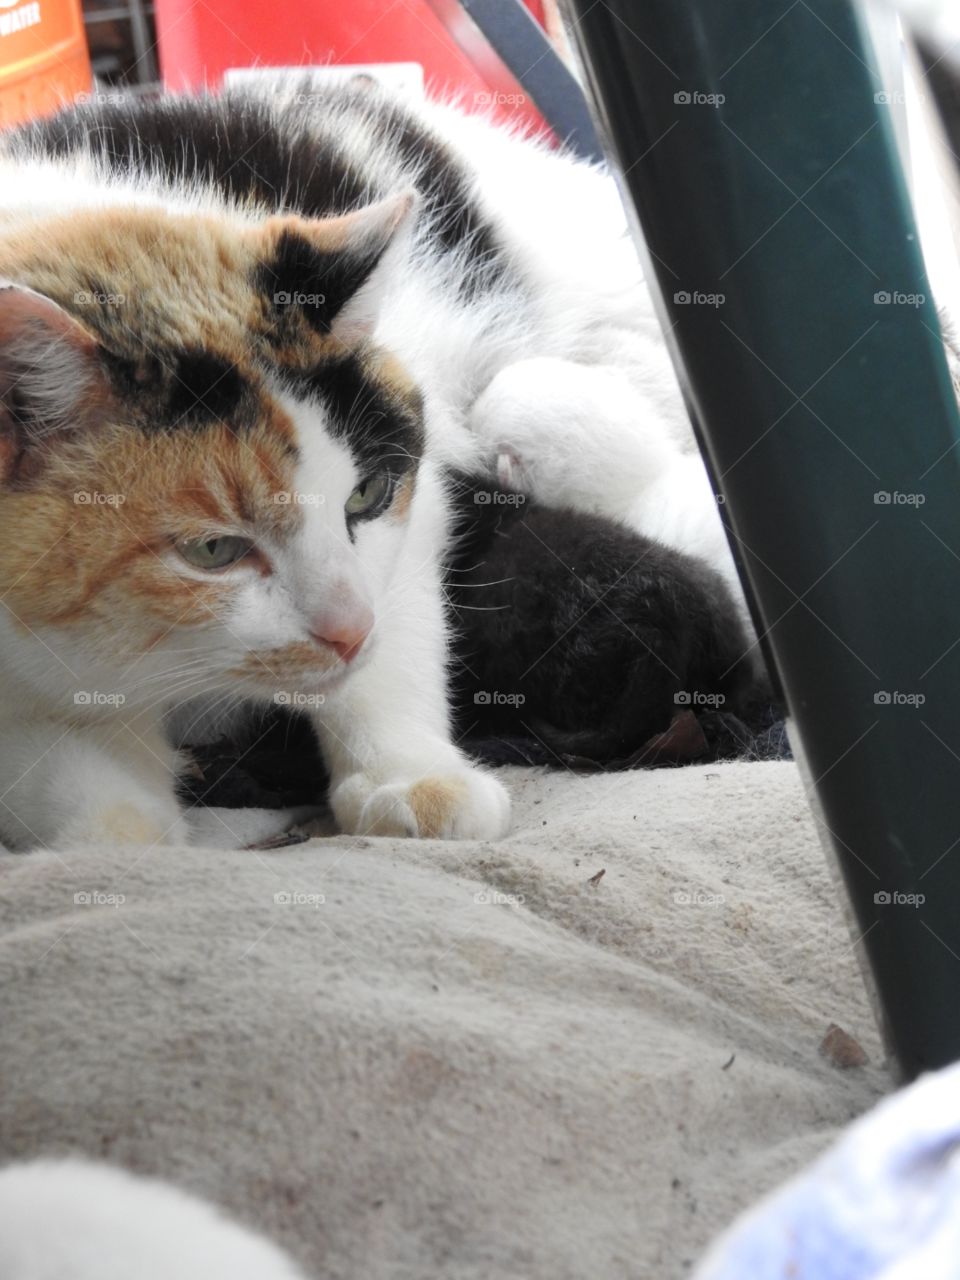 mother cat nursing her kittens